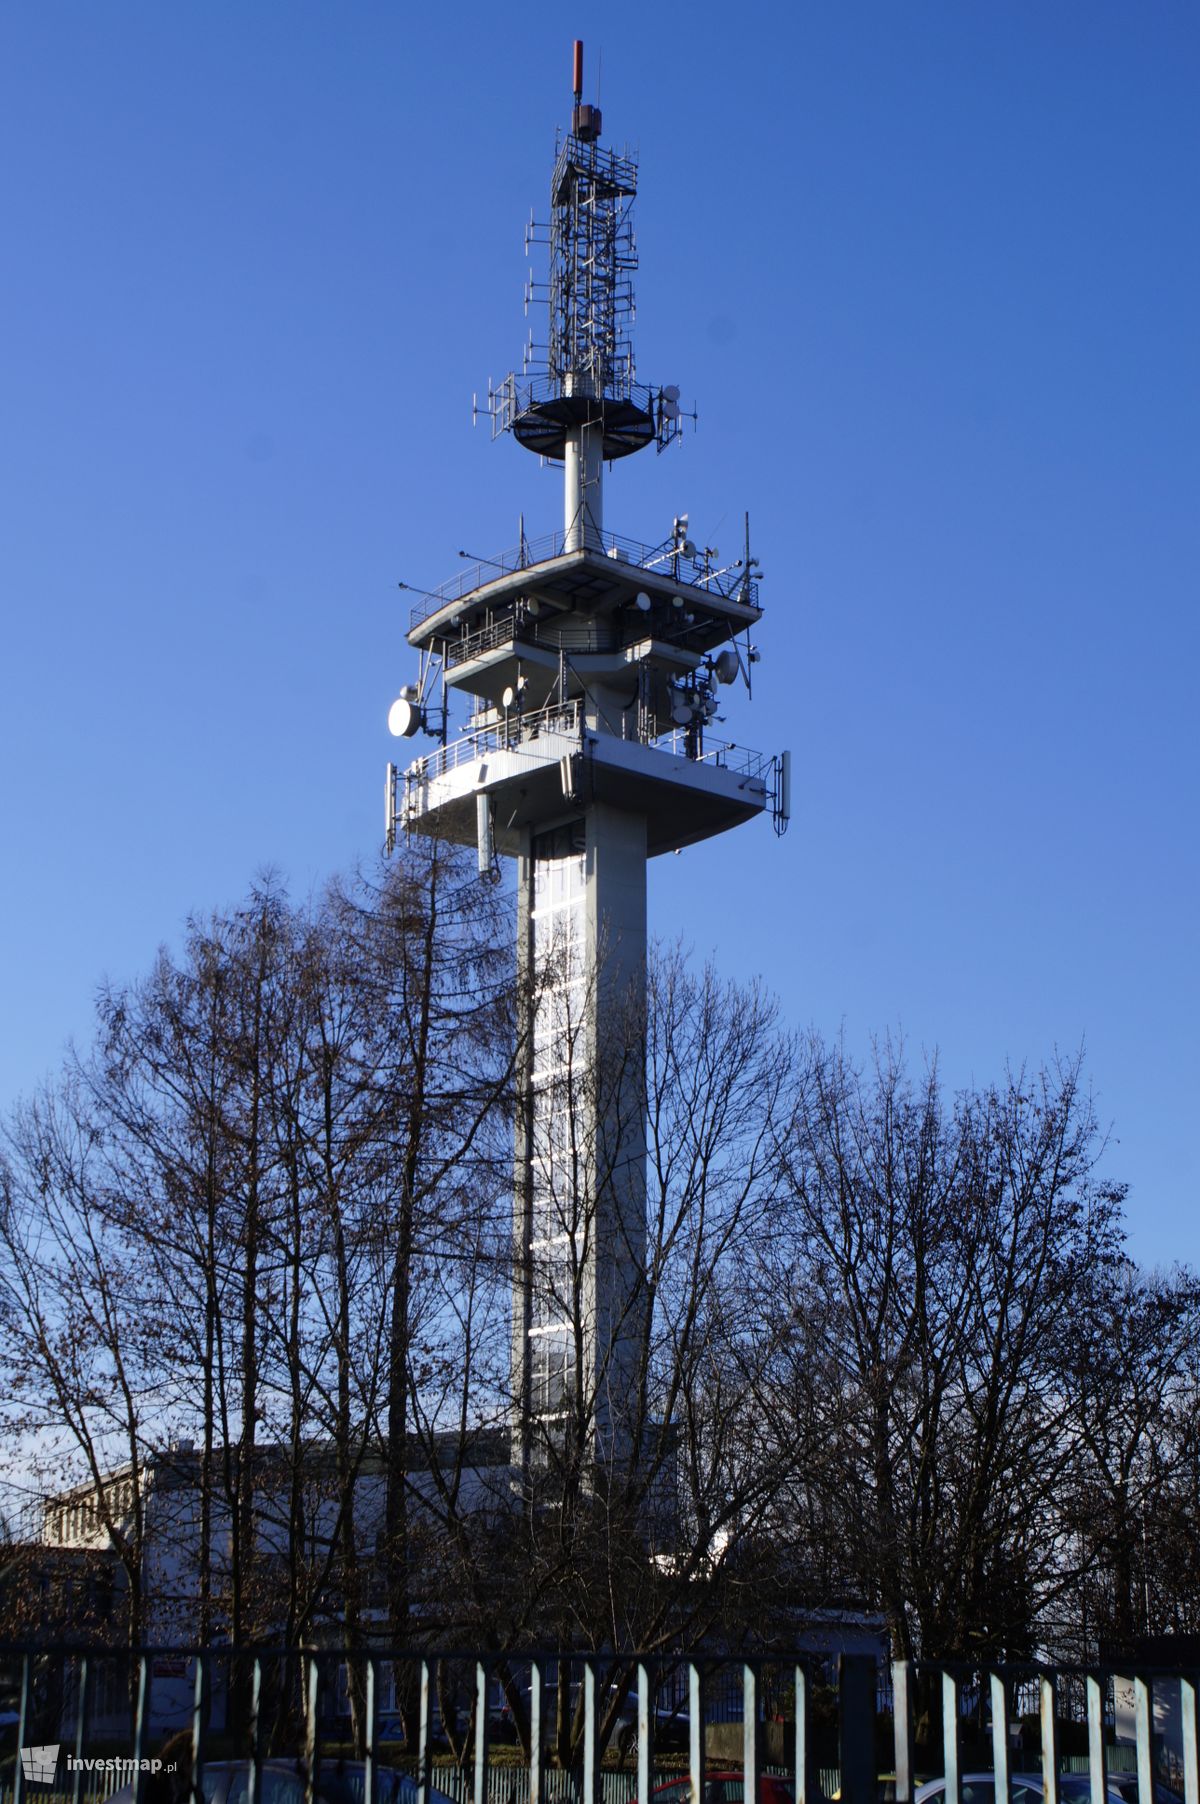 Zdjęcie [Kraków] Wieża Telewizyjna fot. Damian Daraż 